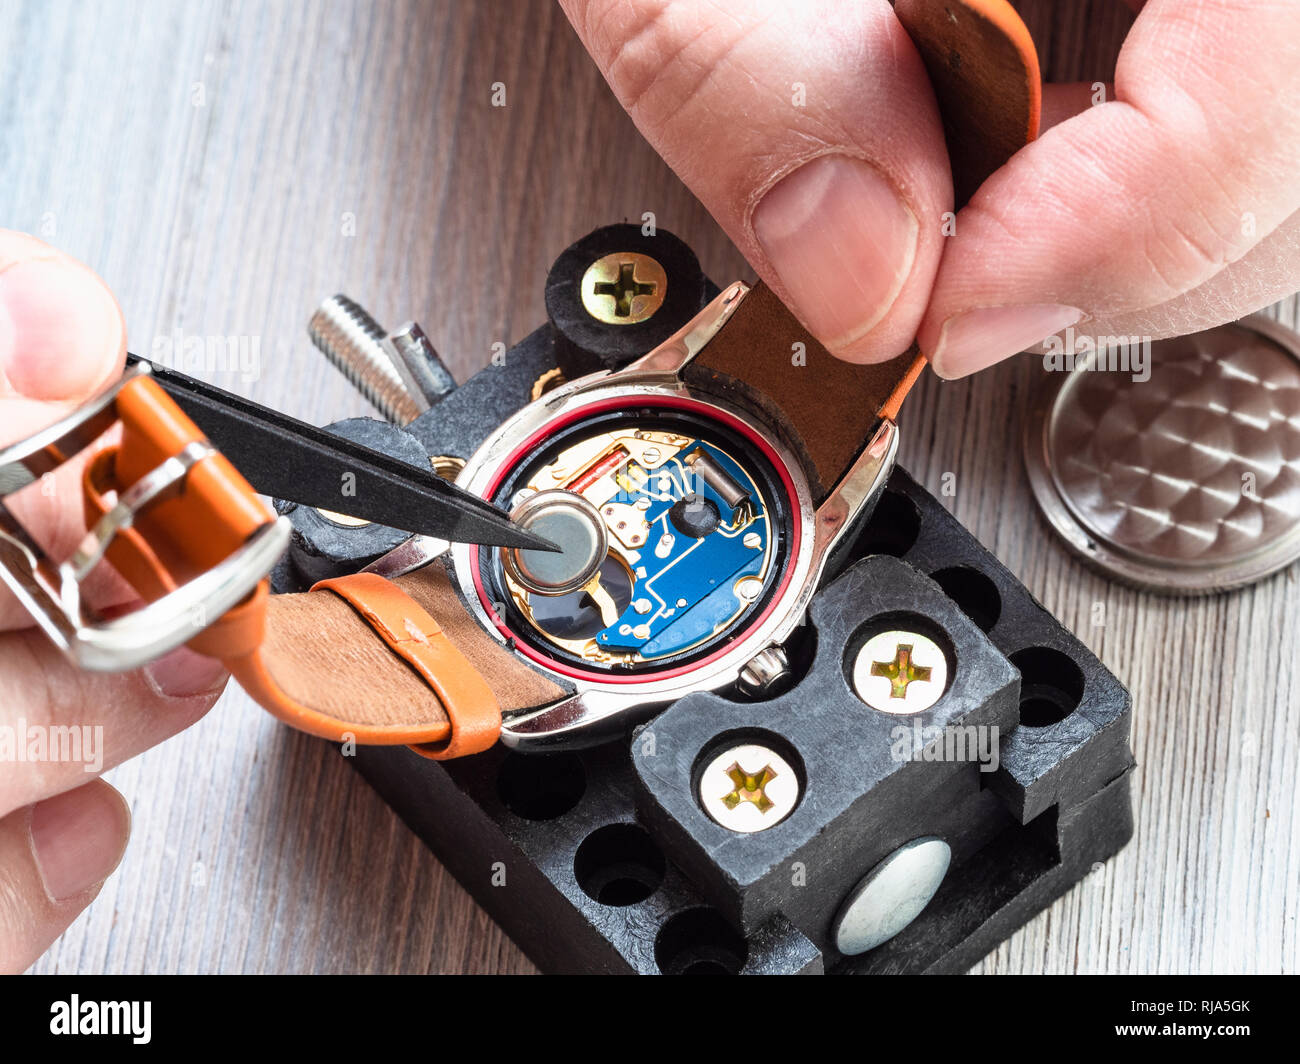 Watch - atelier de réparateur réparation horloger montre-bracelet à quartz avec des pinces en plastique sur la table en bois close up Banque D'Images